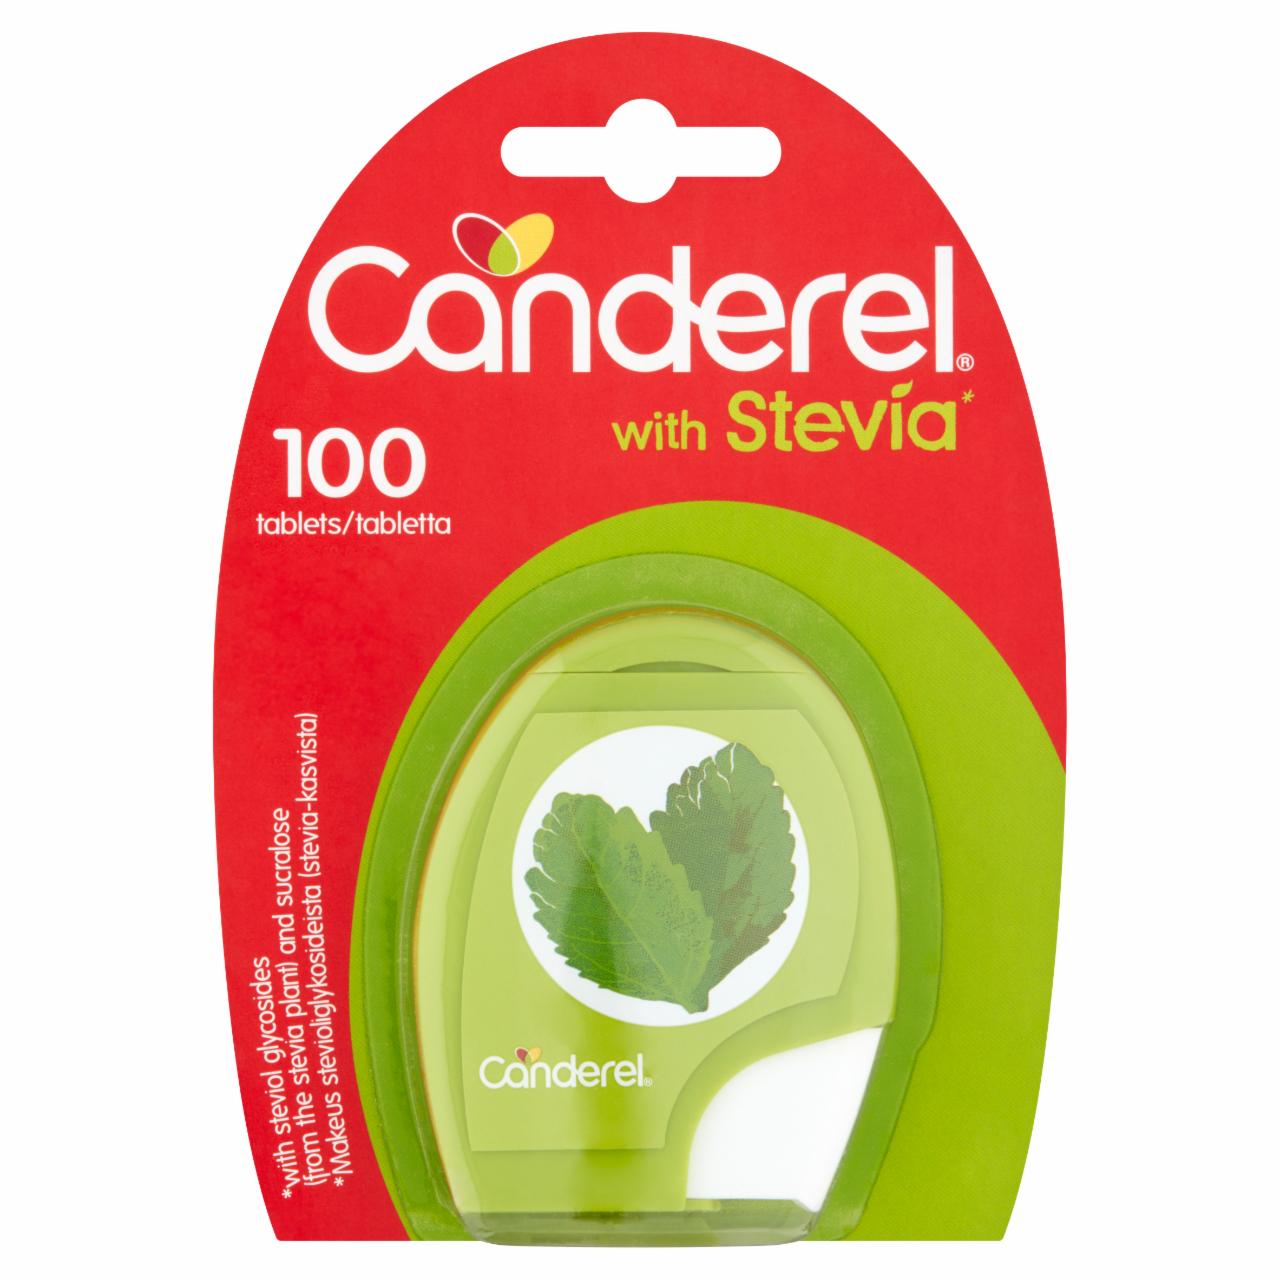 Képek - Canderel édesítőszer stevia növényből származó szteviol-glikoziddal és szukralózzal 100 db 8,5 g